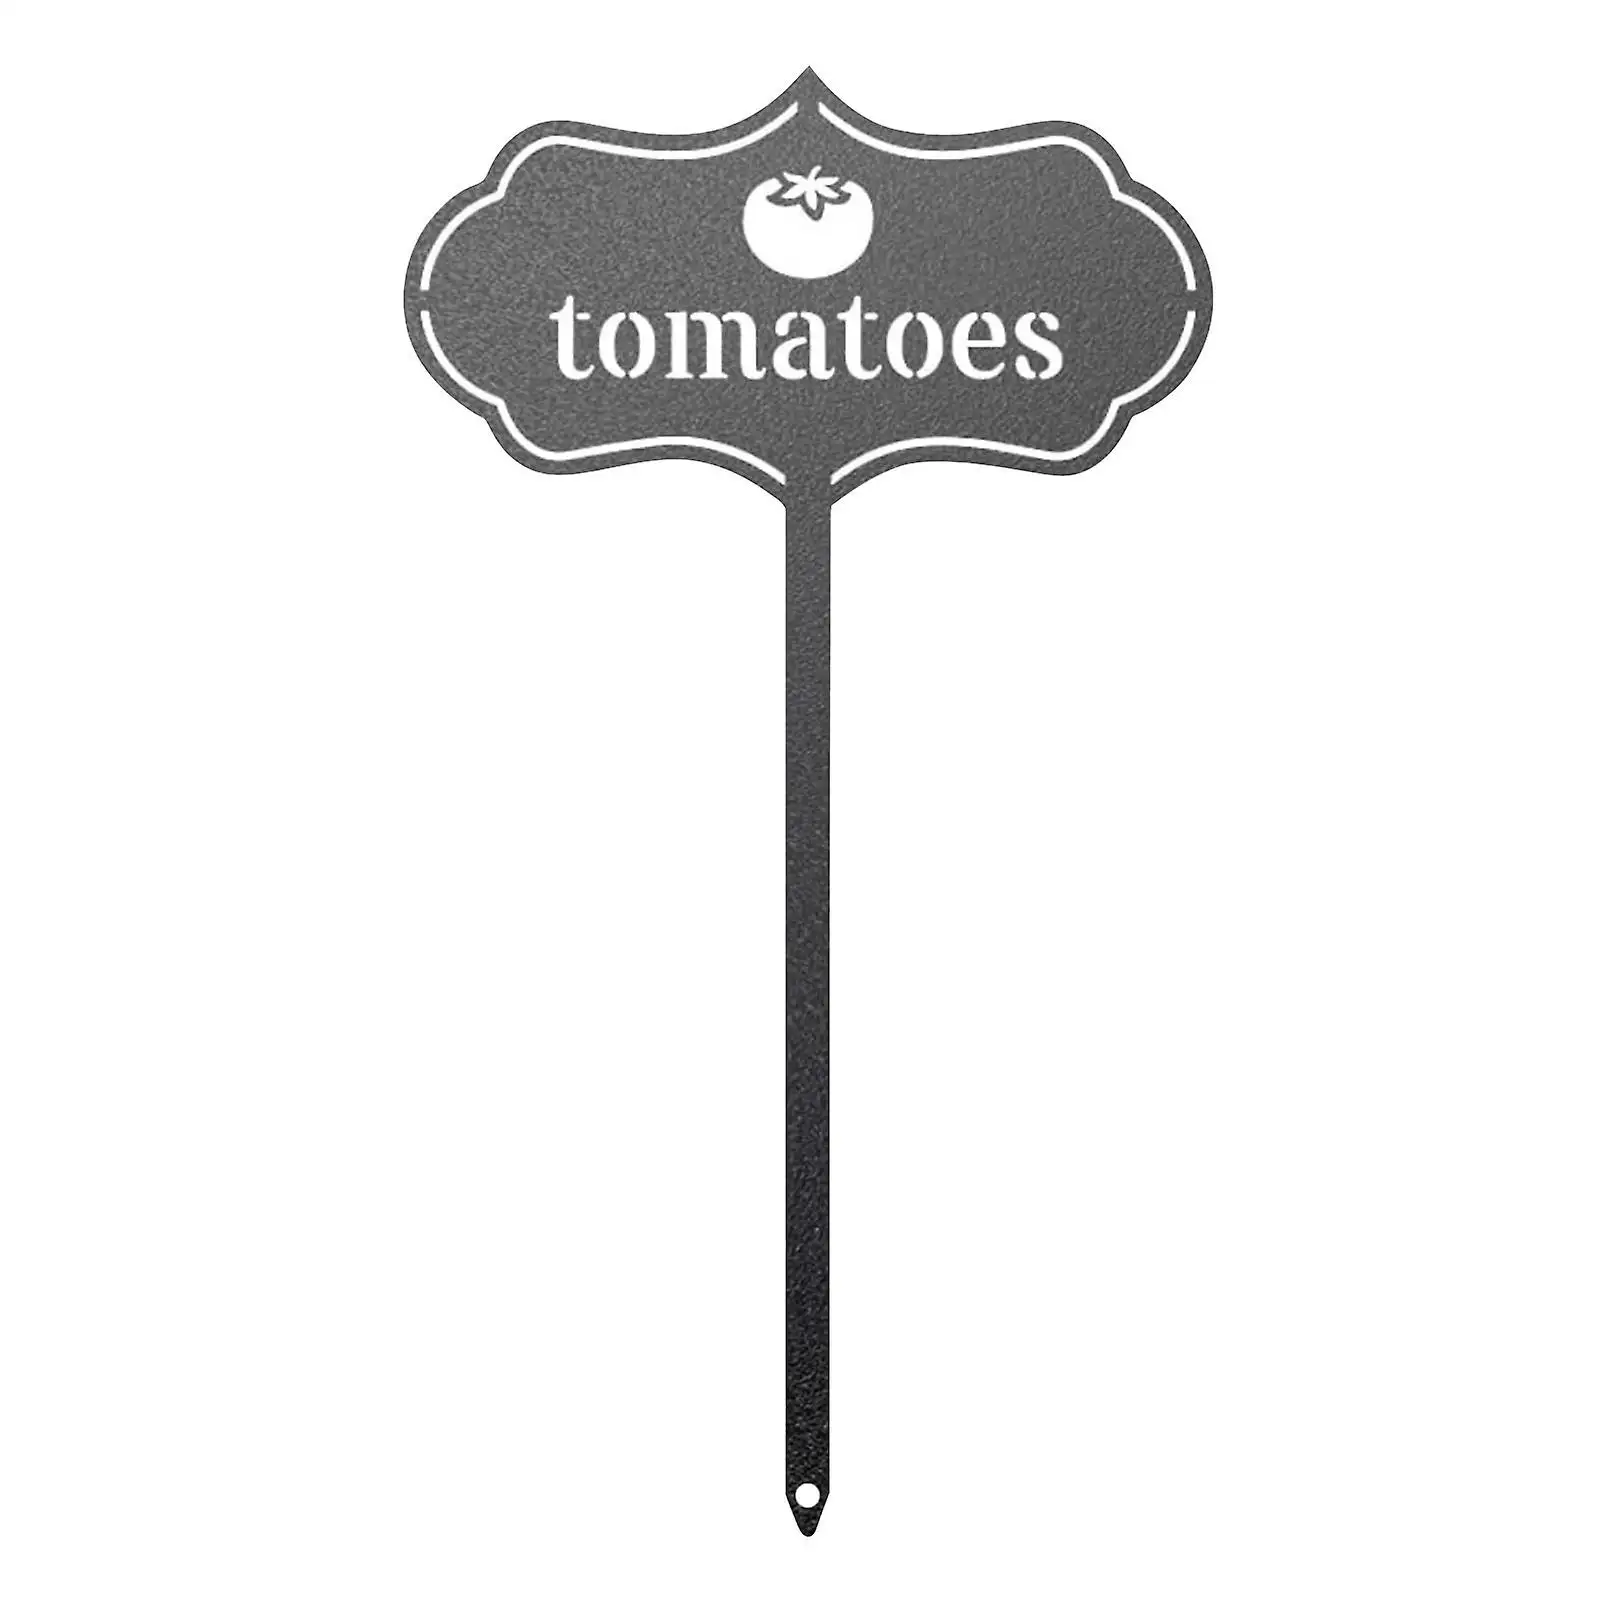 Namensschild für Tomaten mit hohem Verkauf für den Gebrauch im Garten oder Namensschild in langlebiger Qualität mit eleganter Oberfläche zu Großhandelspreis